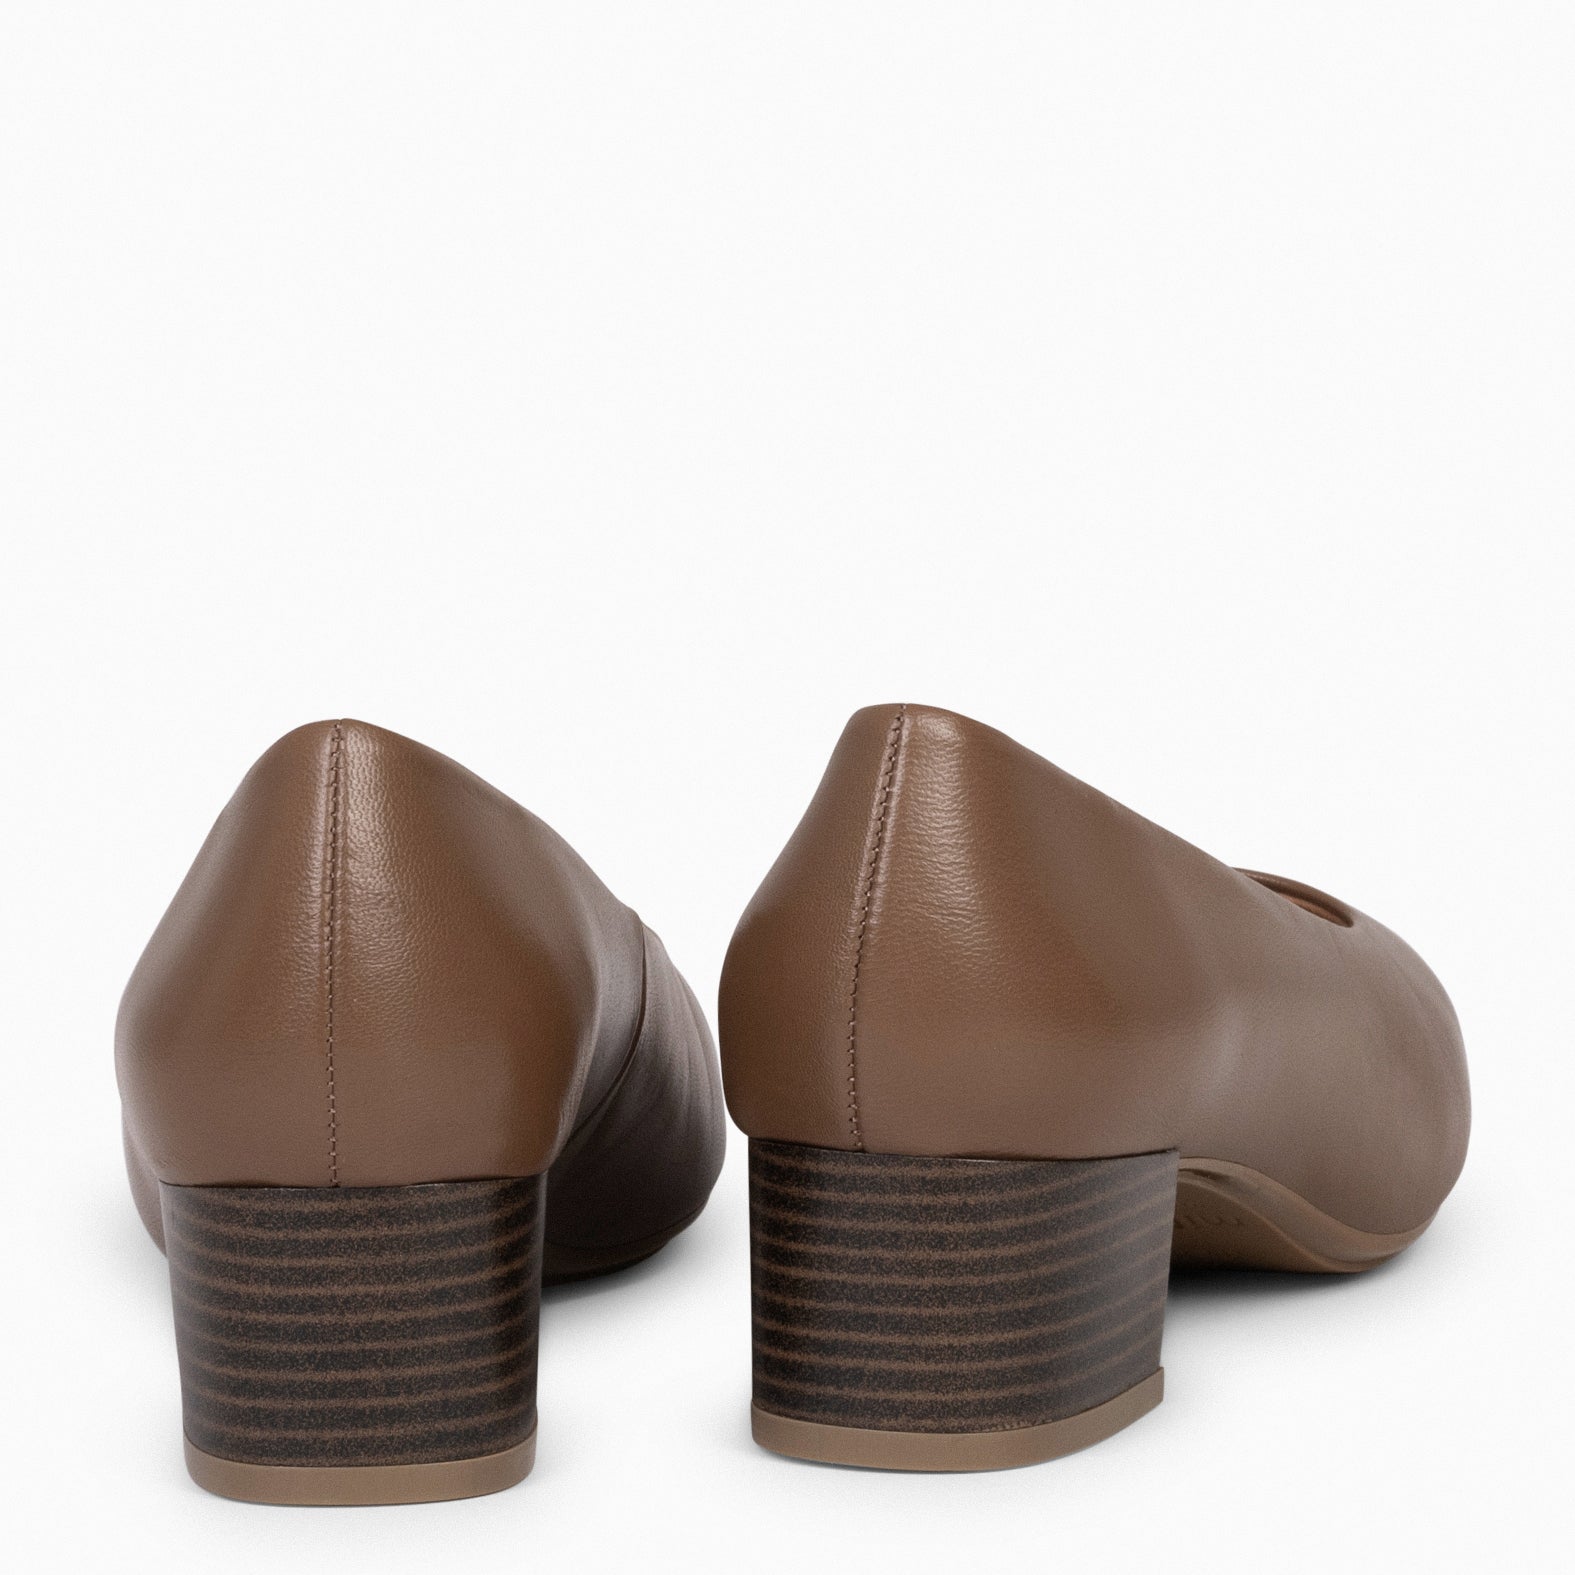 URBAN LADY - Chaussures à talon bas en cuir nappa MARRON